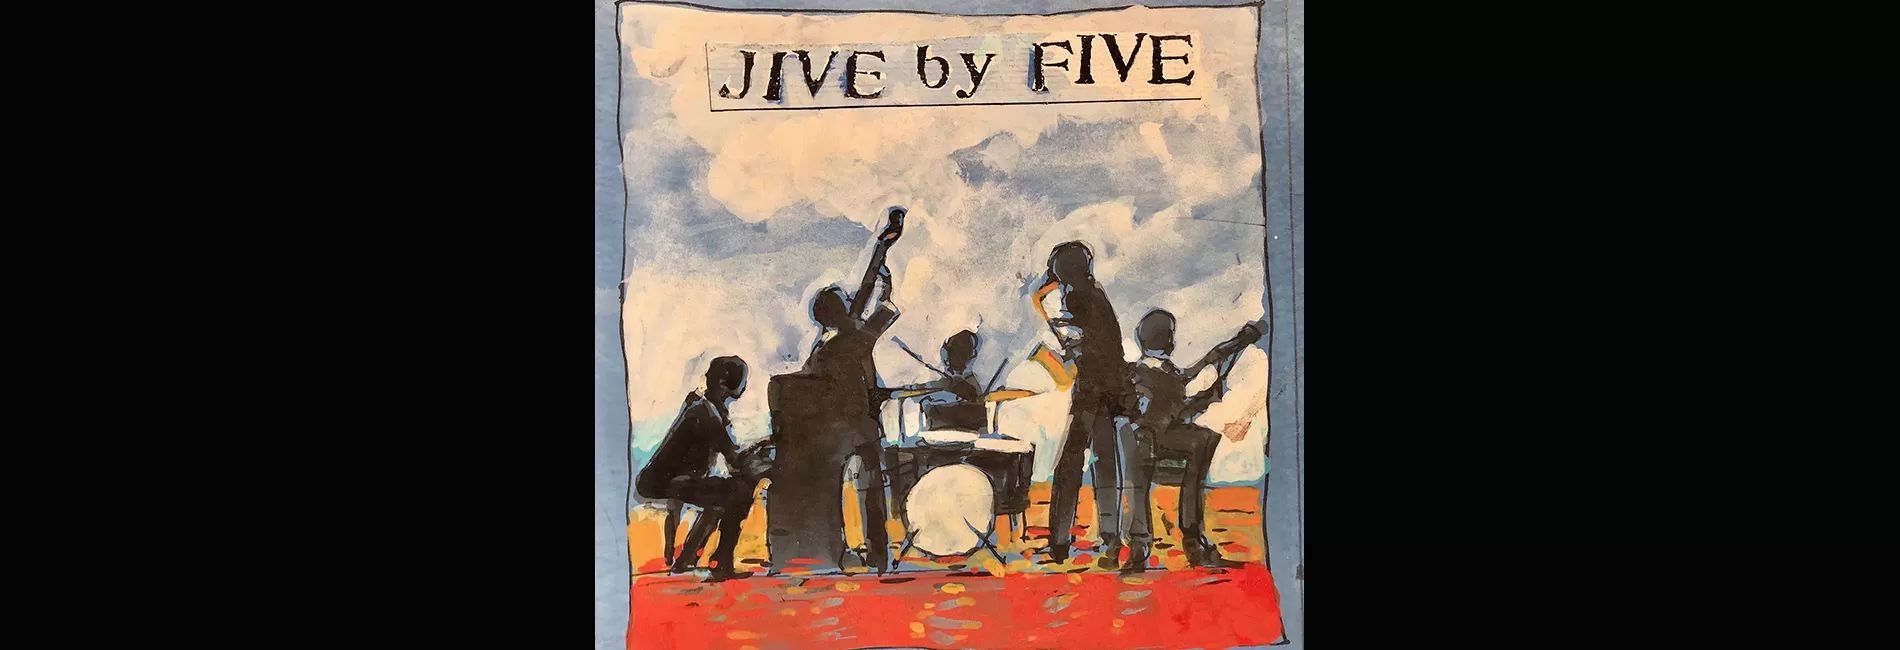 JIVE BY FIVE